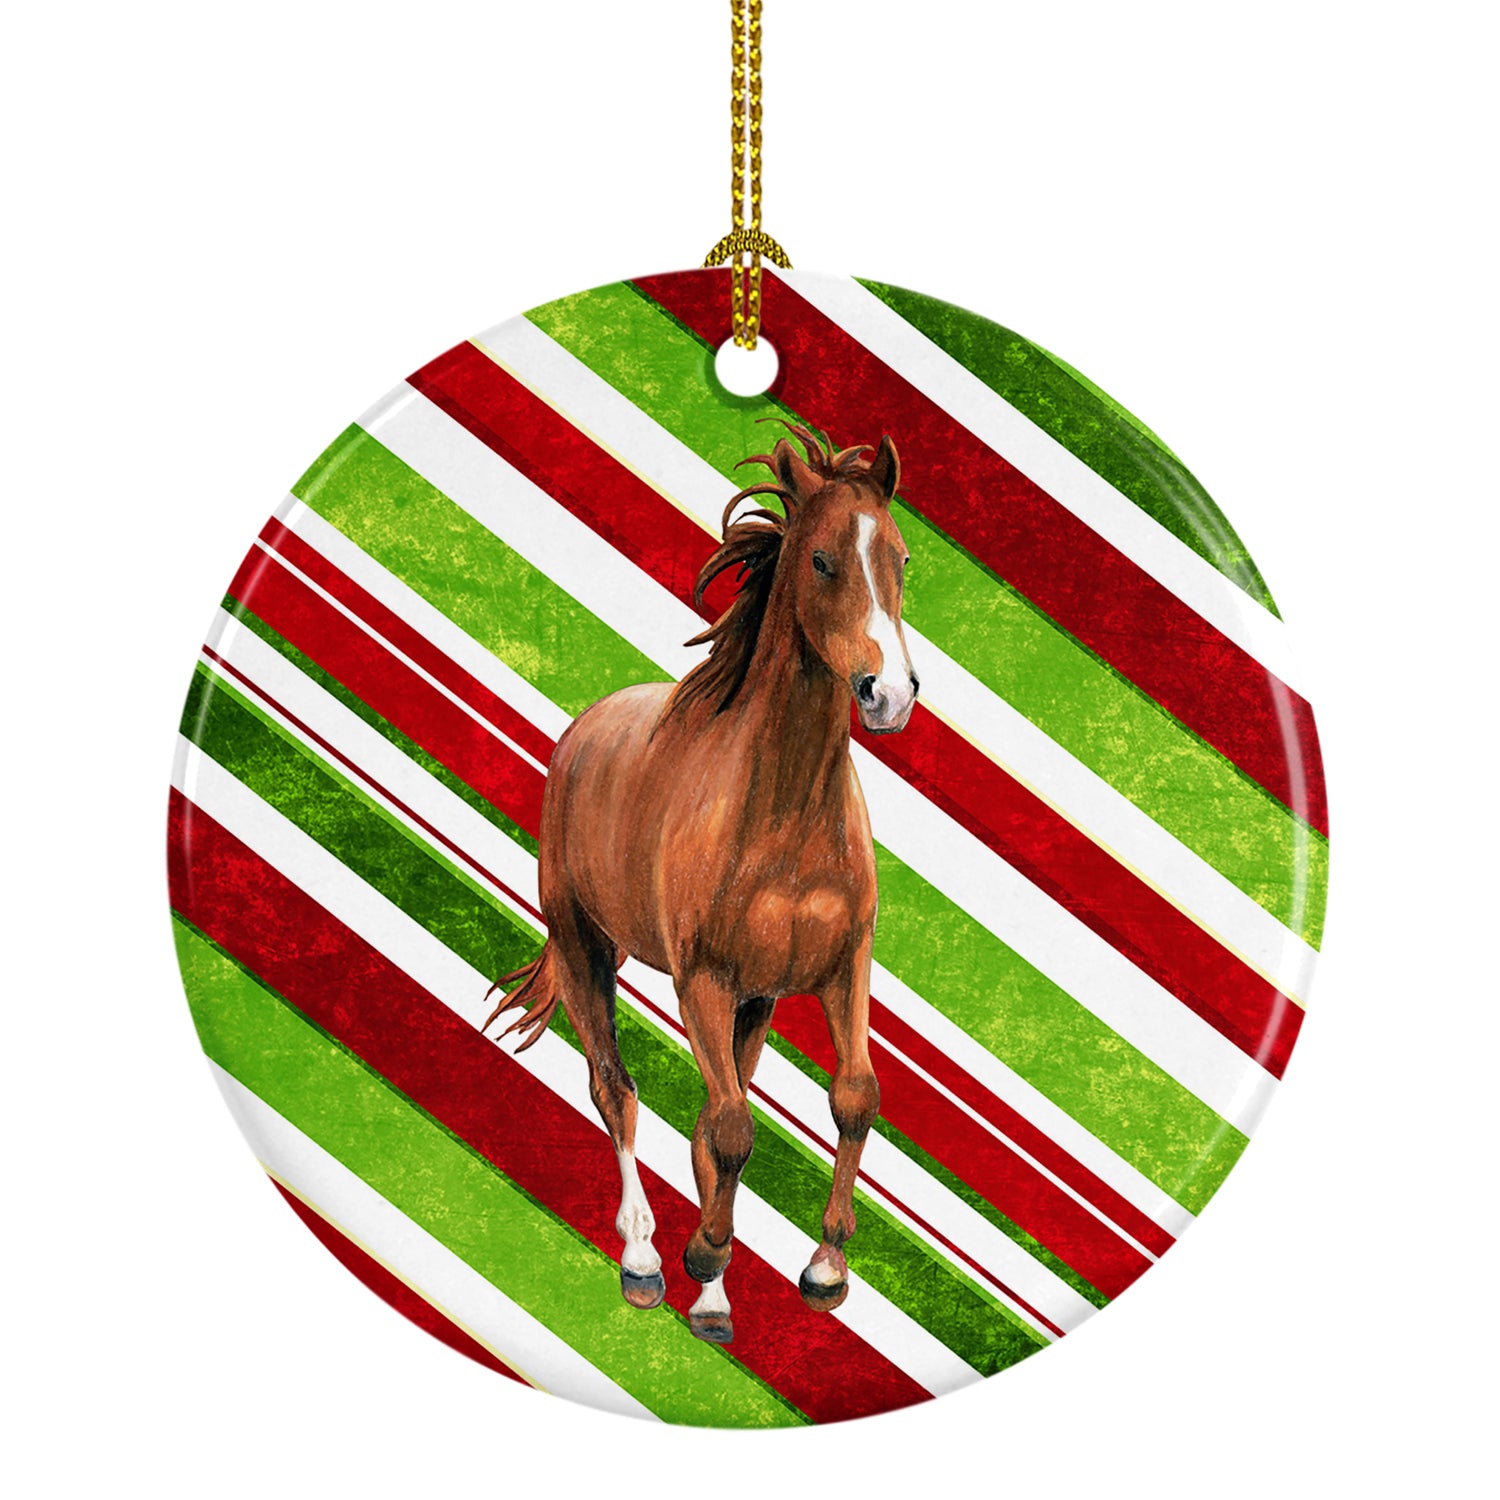 Horse Candy Cane Holiday Christmas Ceramic Ornament SB3139CO1 - the-store.com